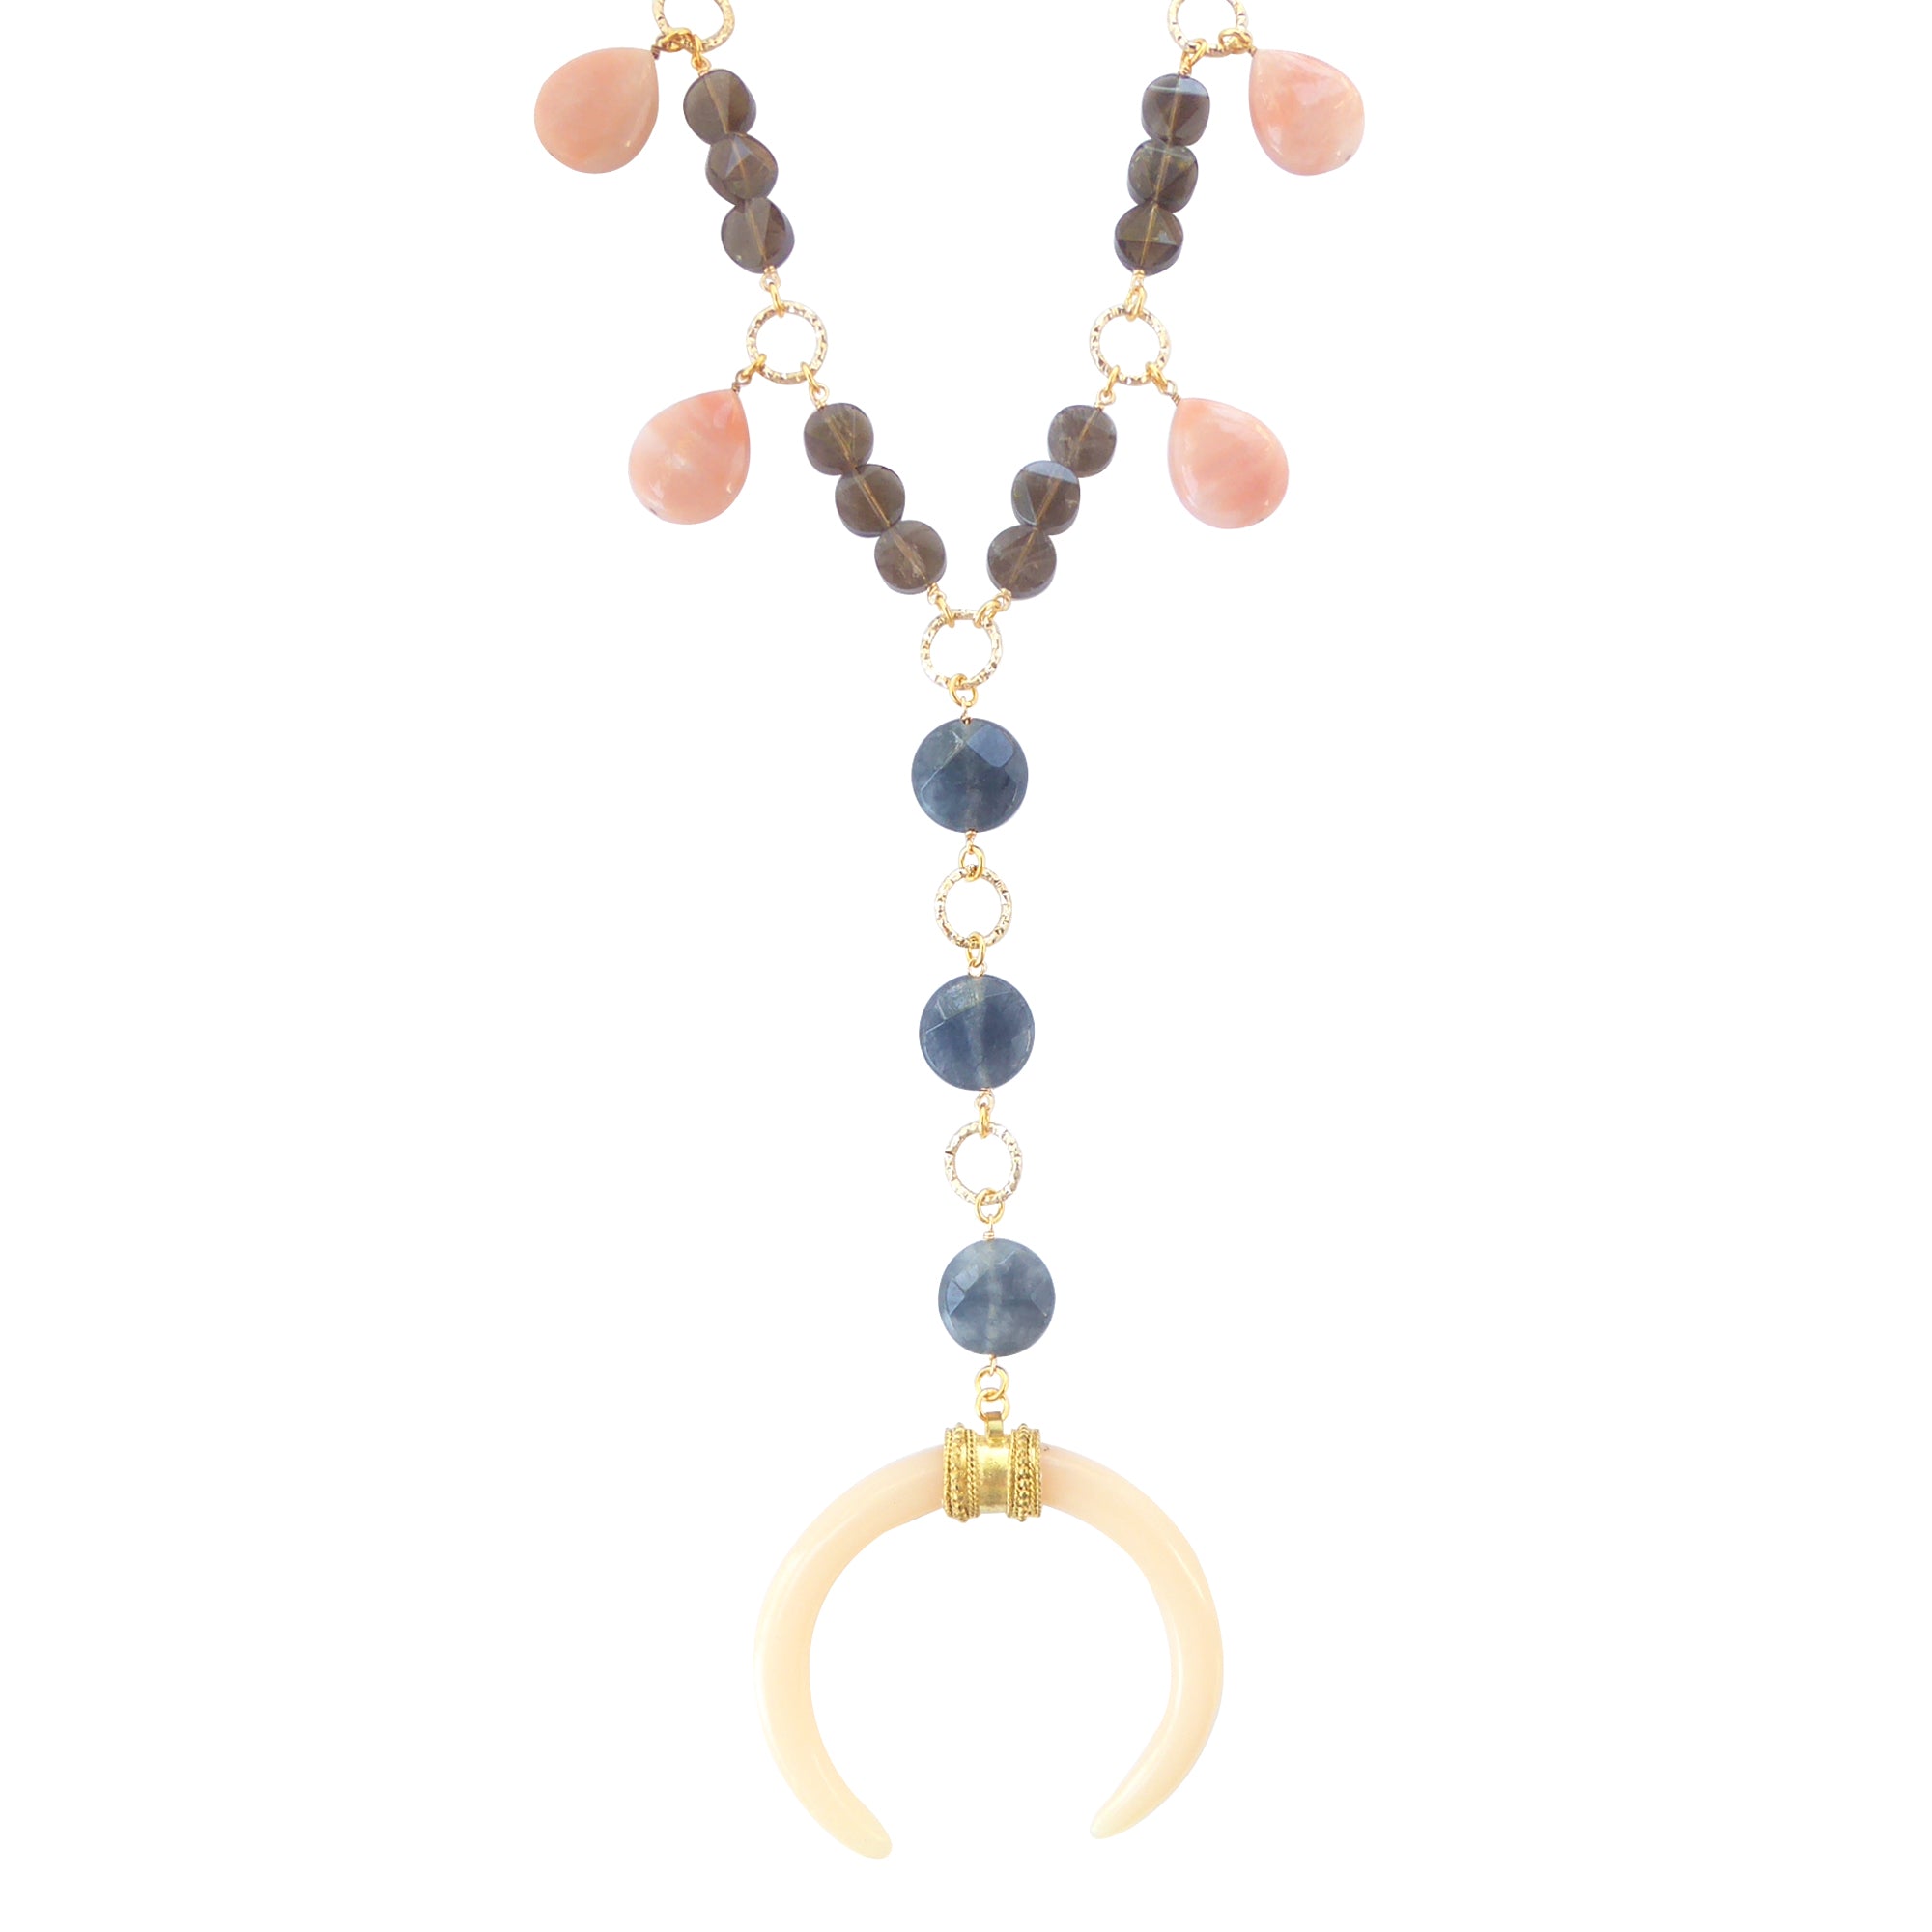 Devana necklace by Jenny Dayco 1